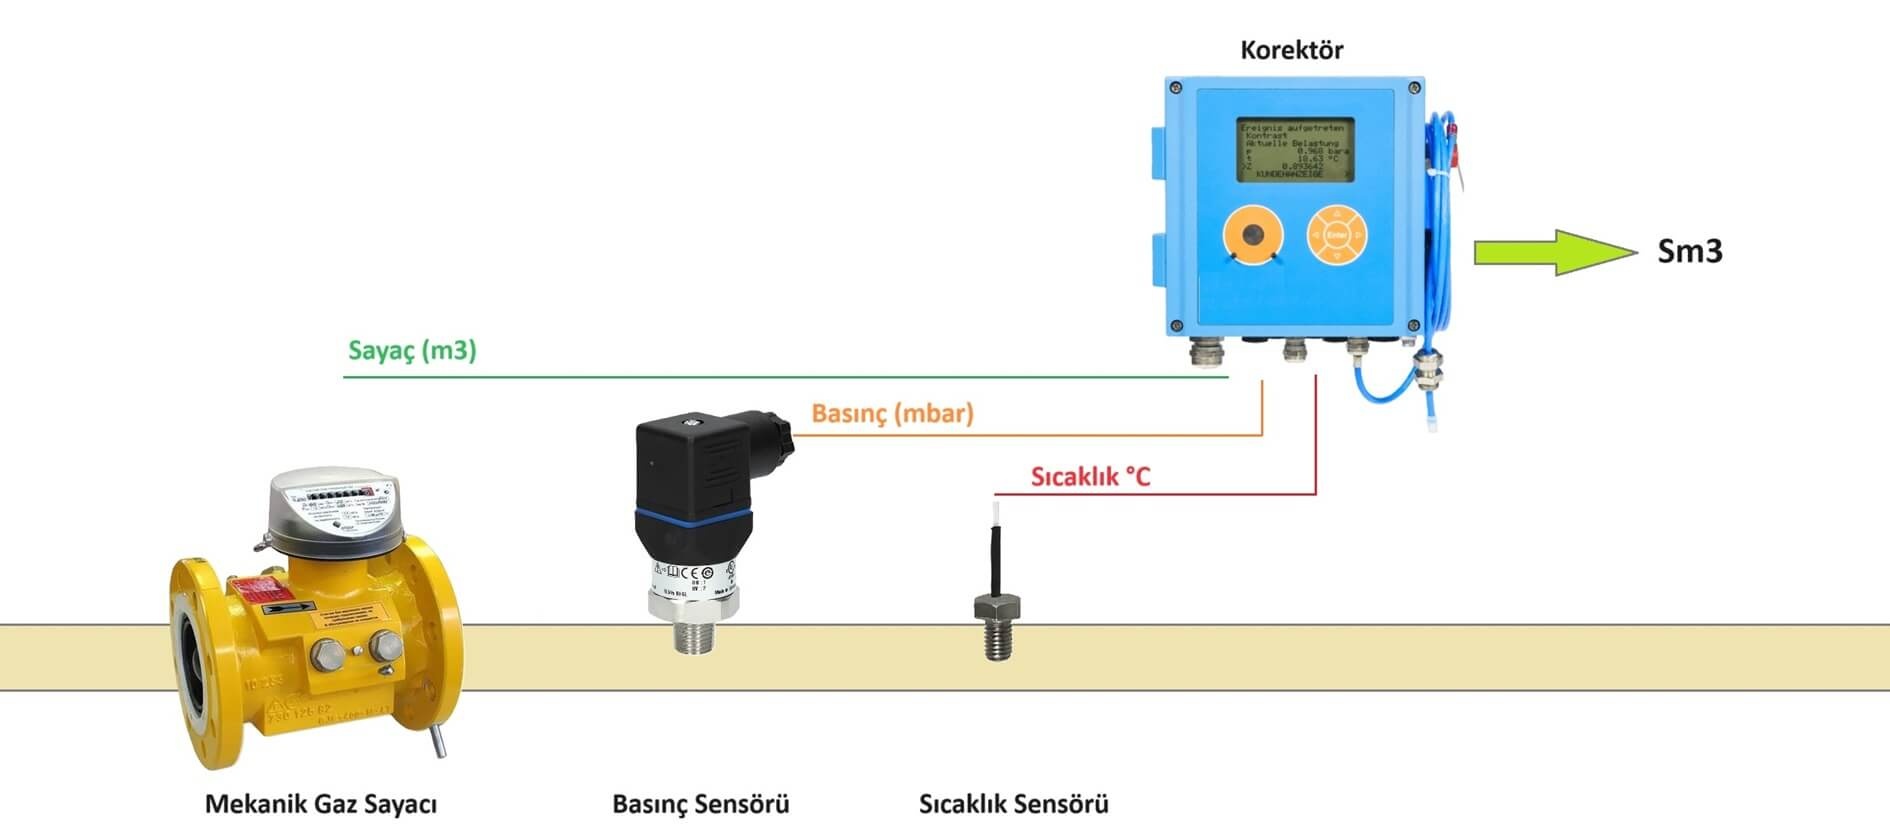 Mekanik gaz sayacı ile doğalgaz tüketim ölçümü (Conventional natural gas measurement with mechanical gas meter)